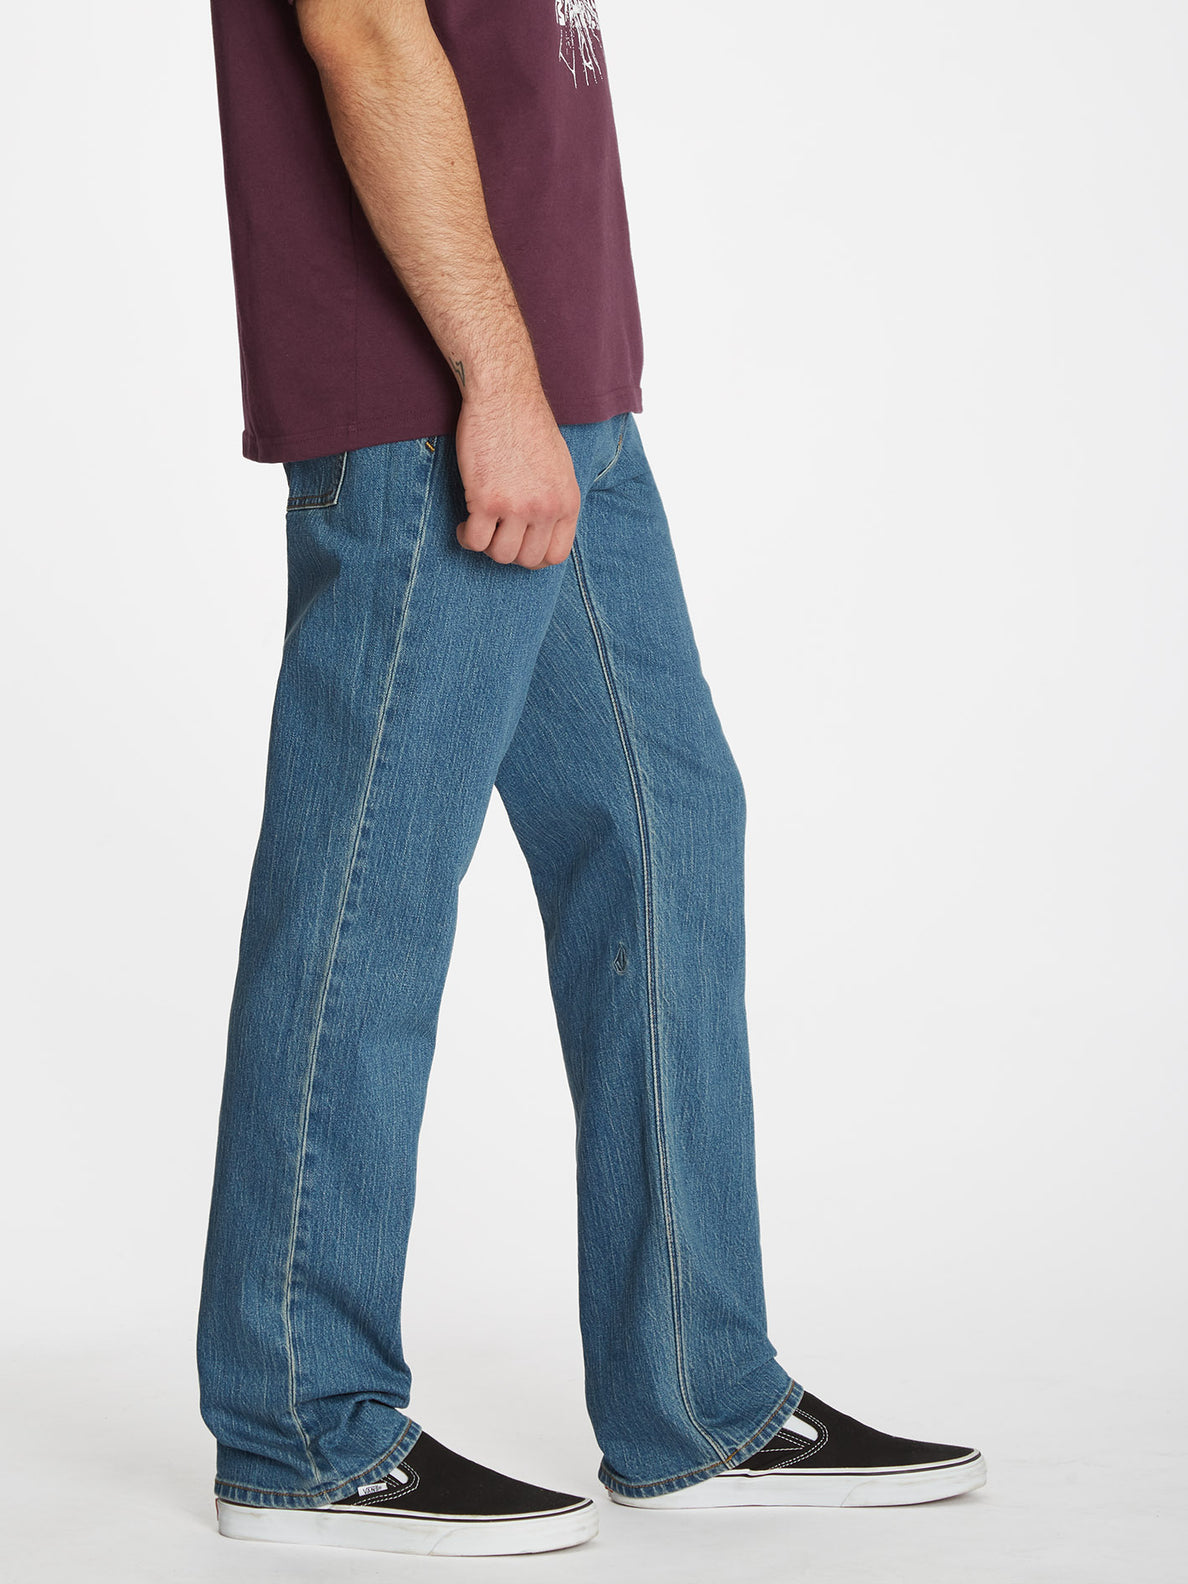 Solver Jeans - AGED INDIGO (A1912303_AIN) [3 - Copia]